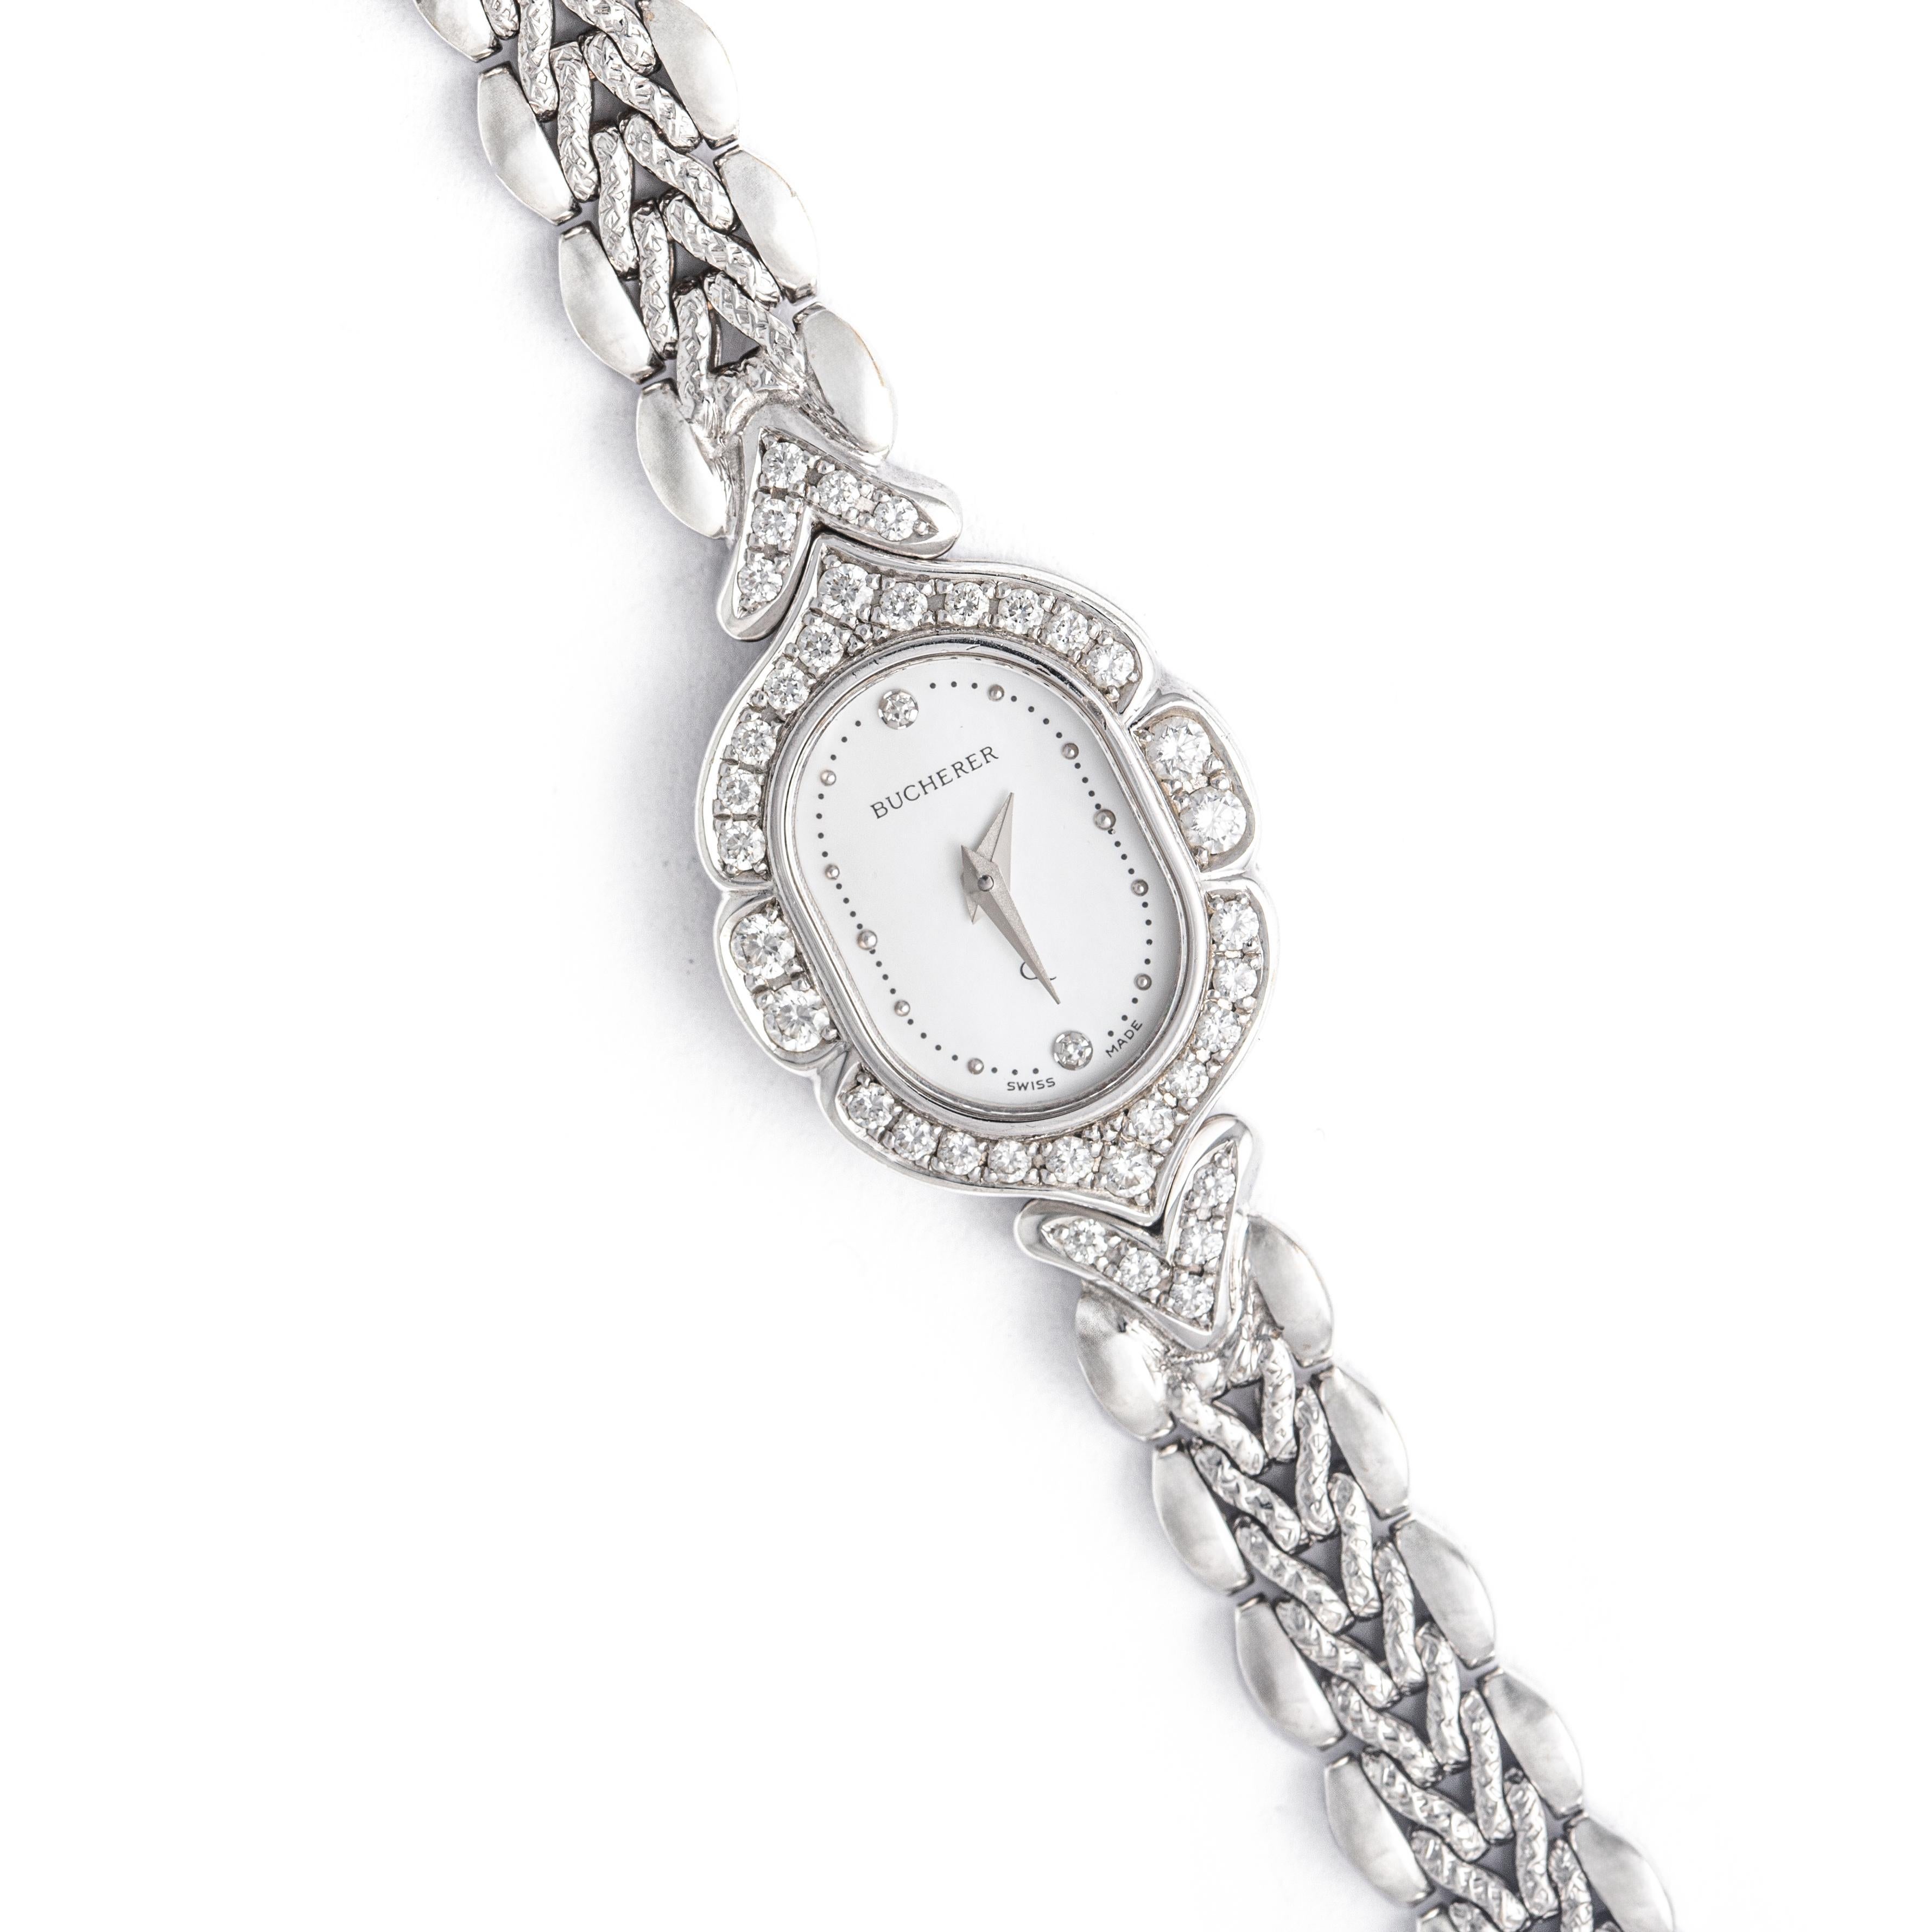 Montre-bracelet Bucherer en or blanc à diamants 18K.
Circa 1990.
Poids total : 31,31 grammes.


Nous ne garantissons pas le fonctionnement de cette montre.